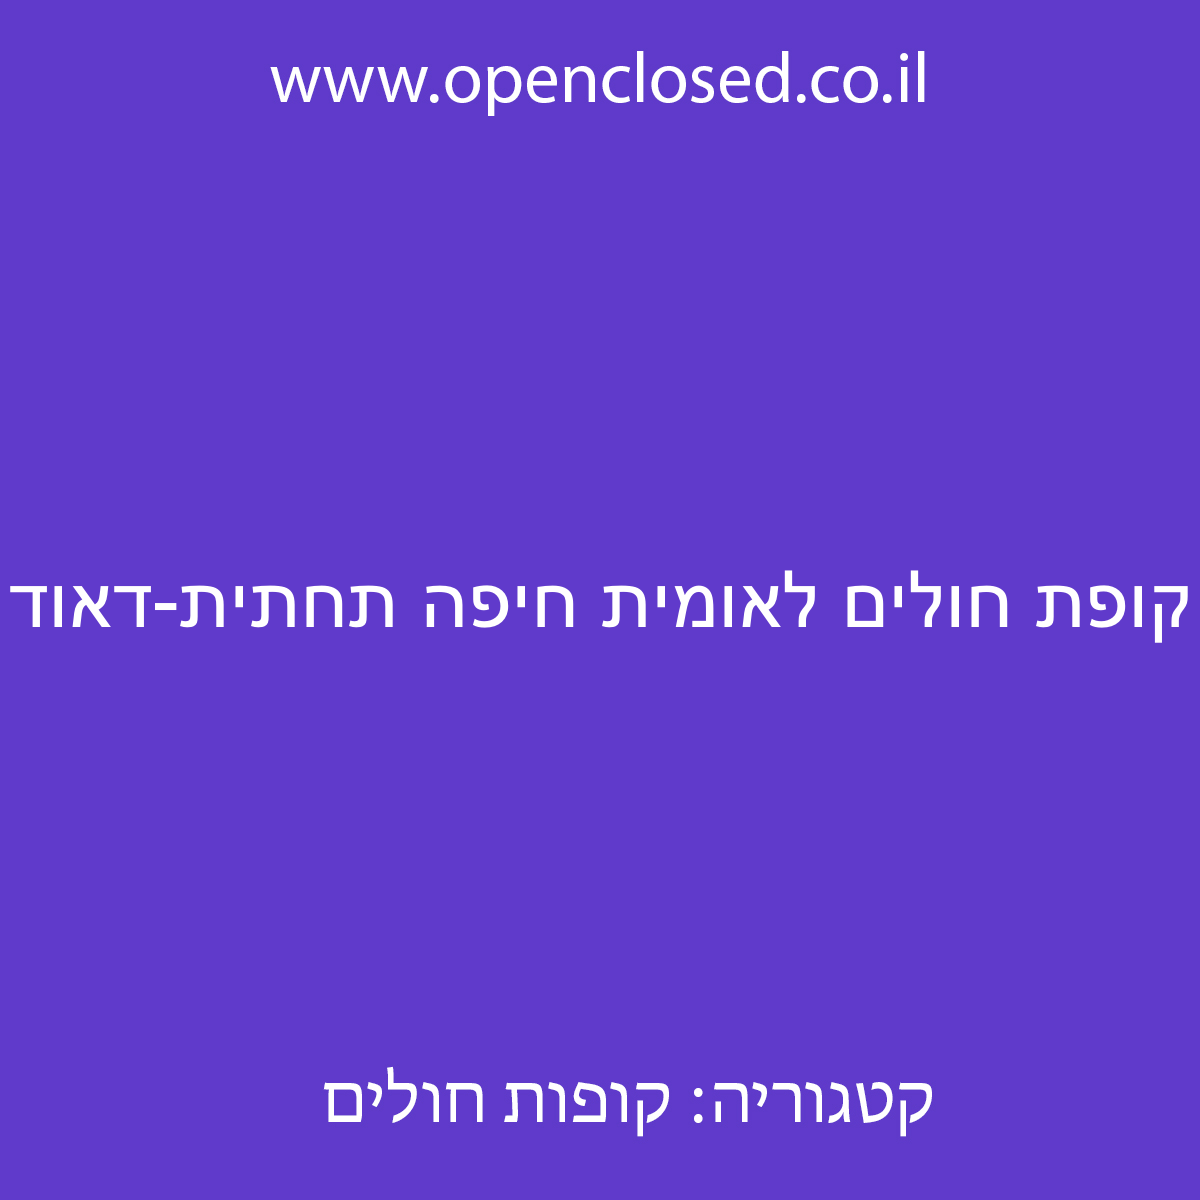 קופת חולים לאומית חיפה תחתית-דאוד